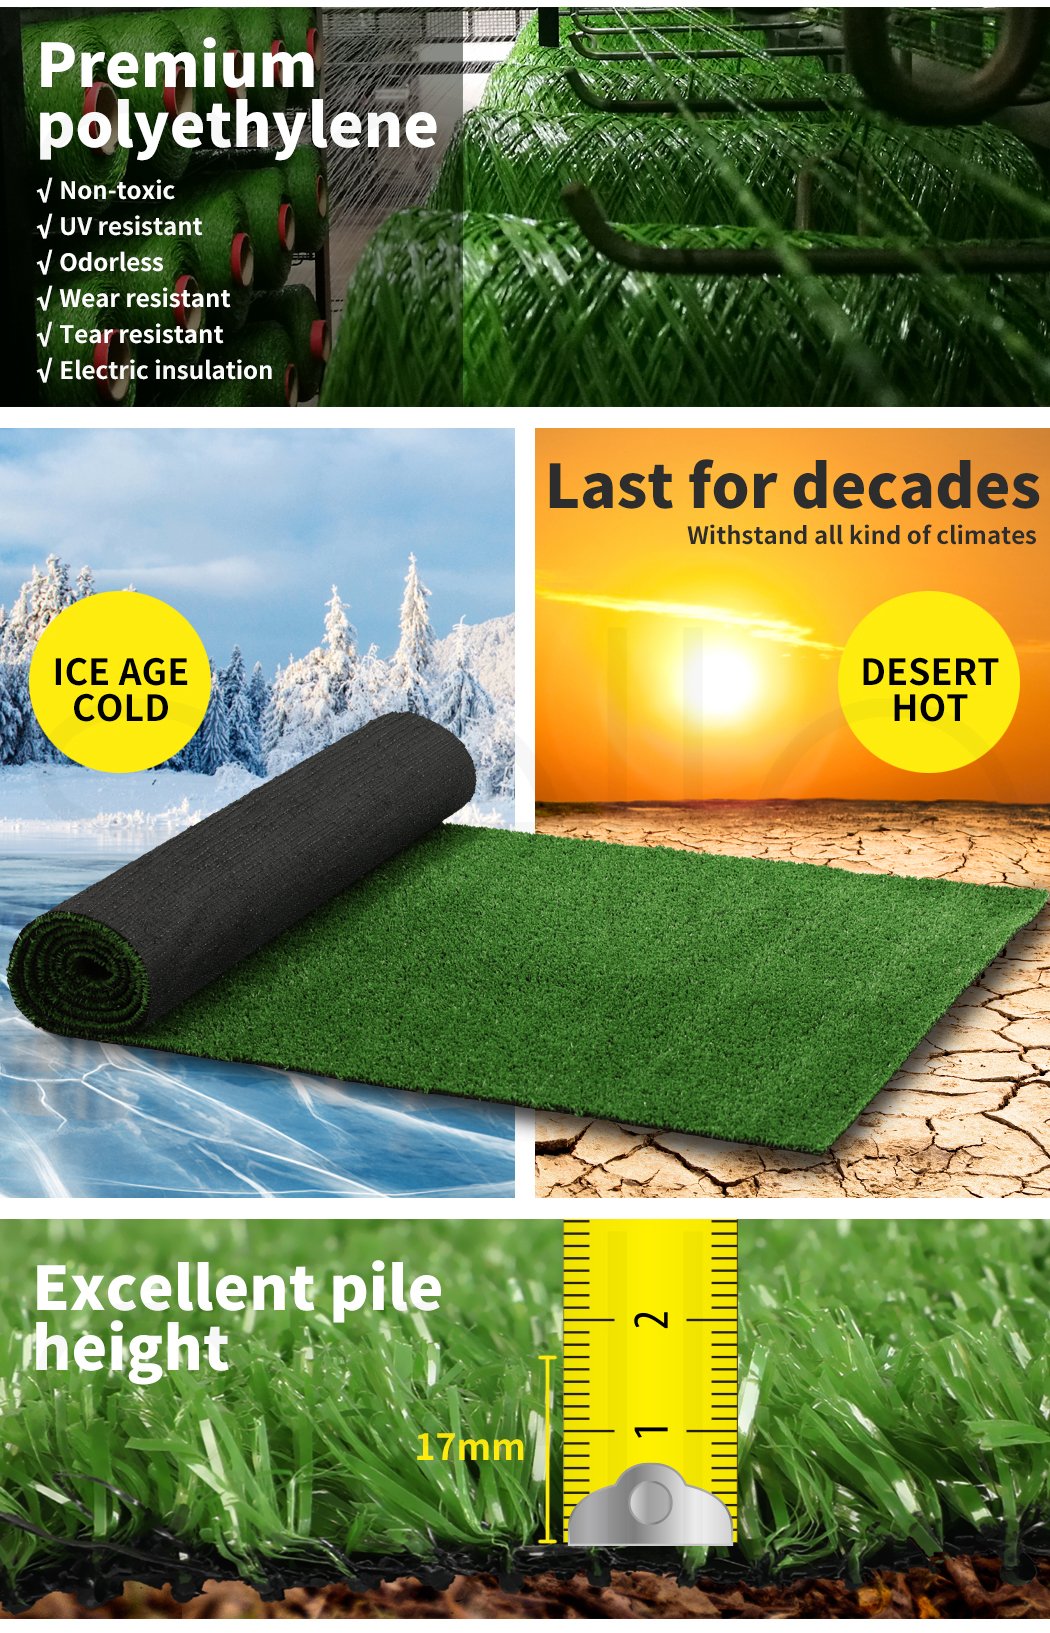 garden / agriculture Artificial Grass Fake Flooring Mat